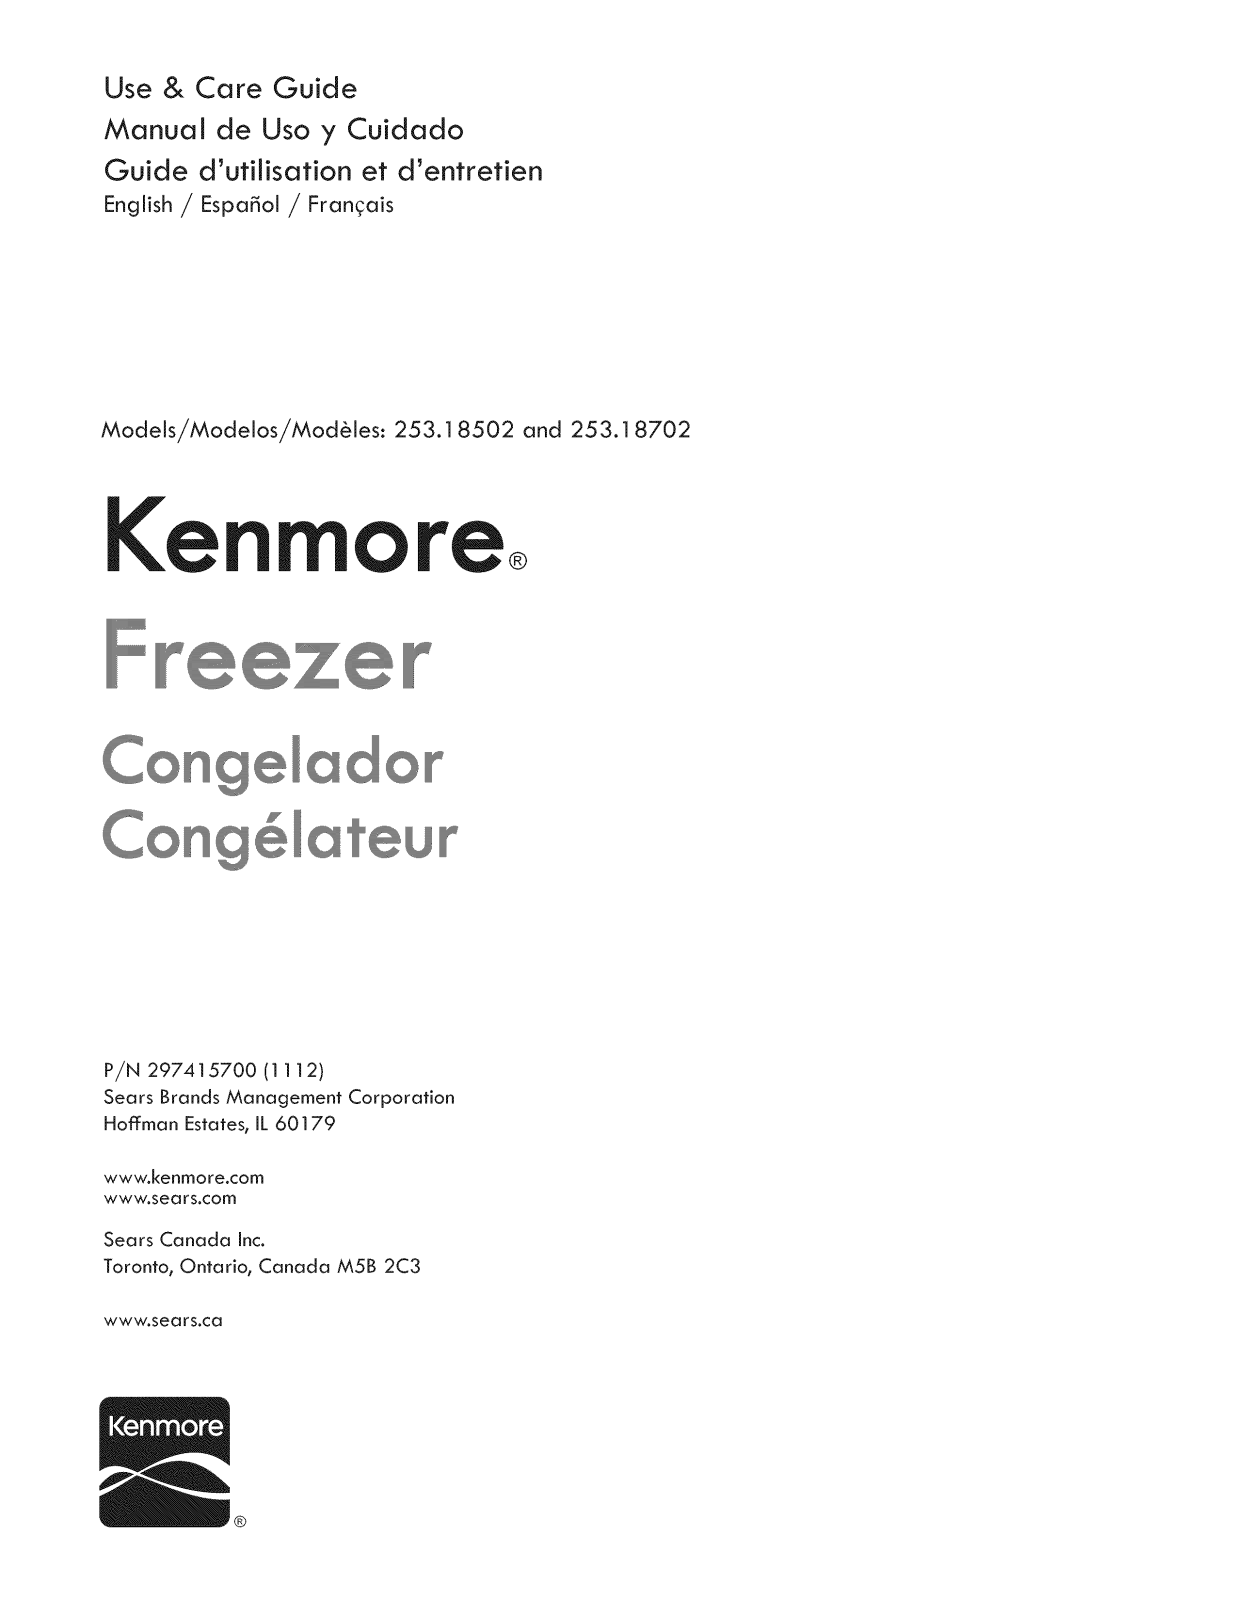 Kenmore 25318702210, 25318502210 Owner’s Manual